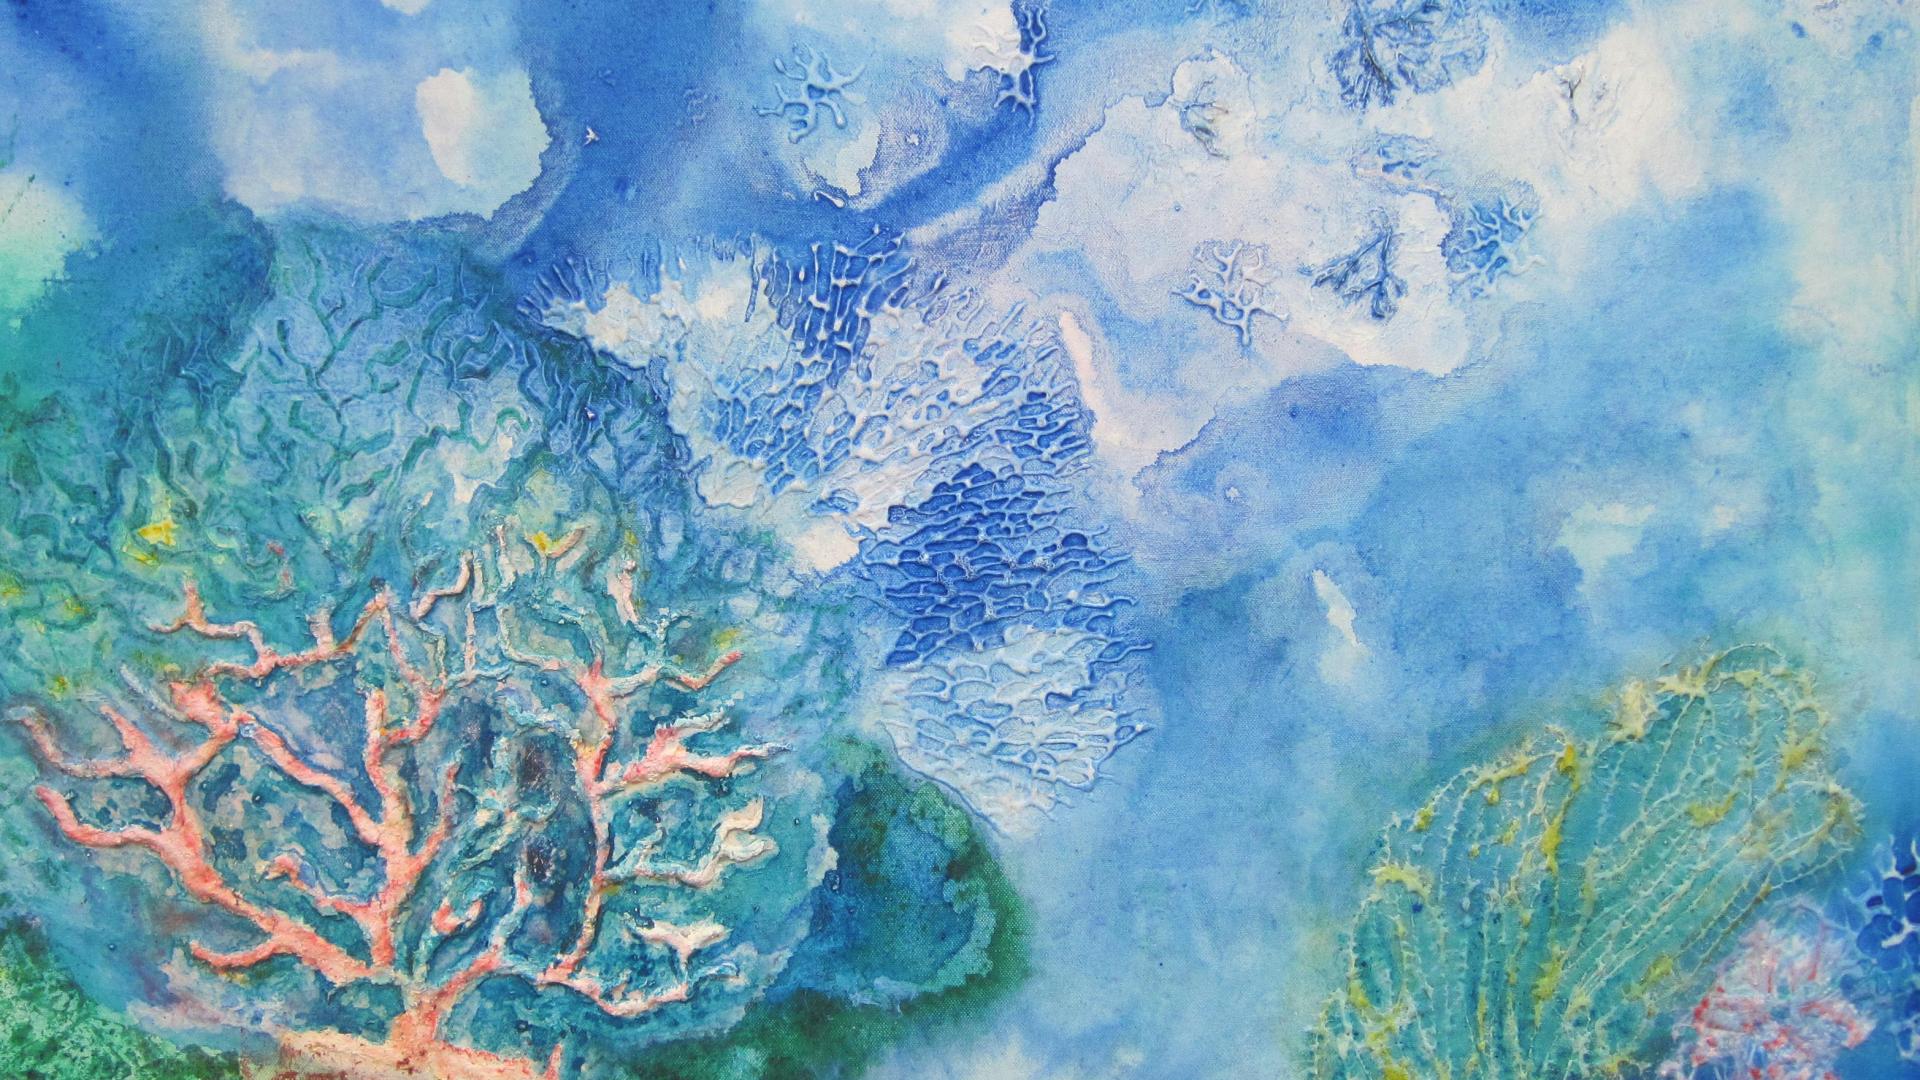 "Coral". Una de las pinturas de la exposición "Océano", de Silvana Vanzi.